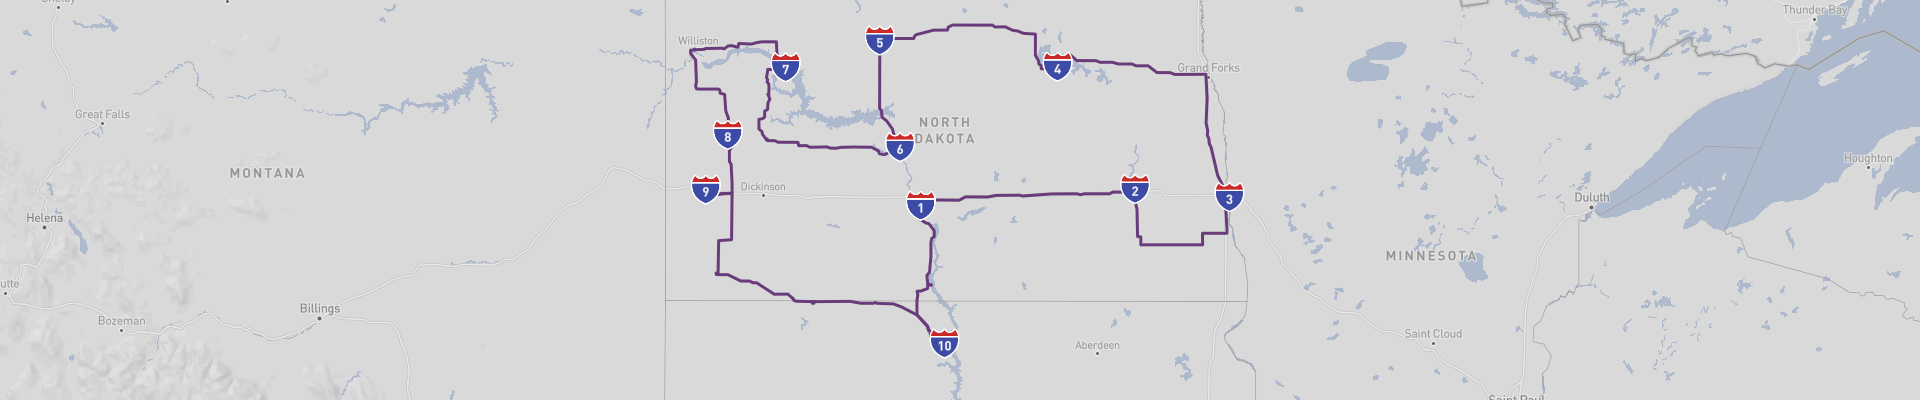 North Dakota Road Trip